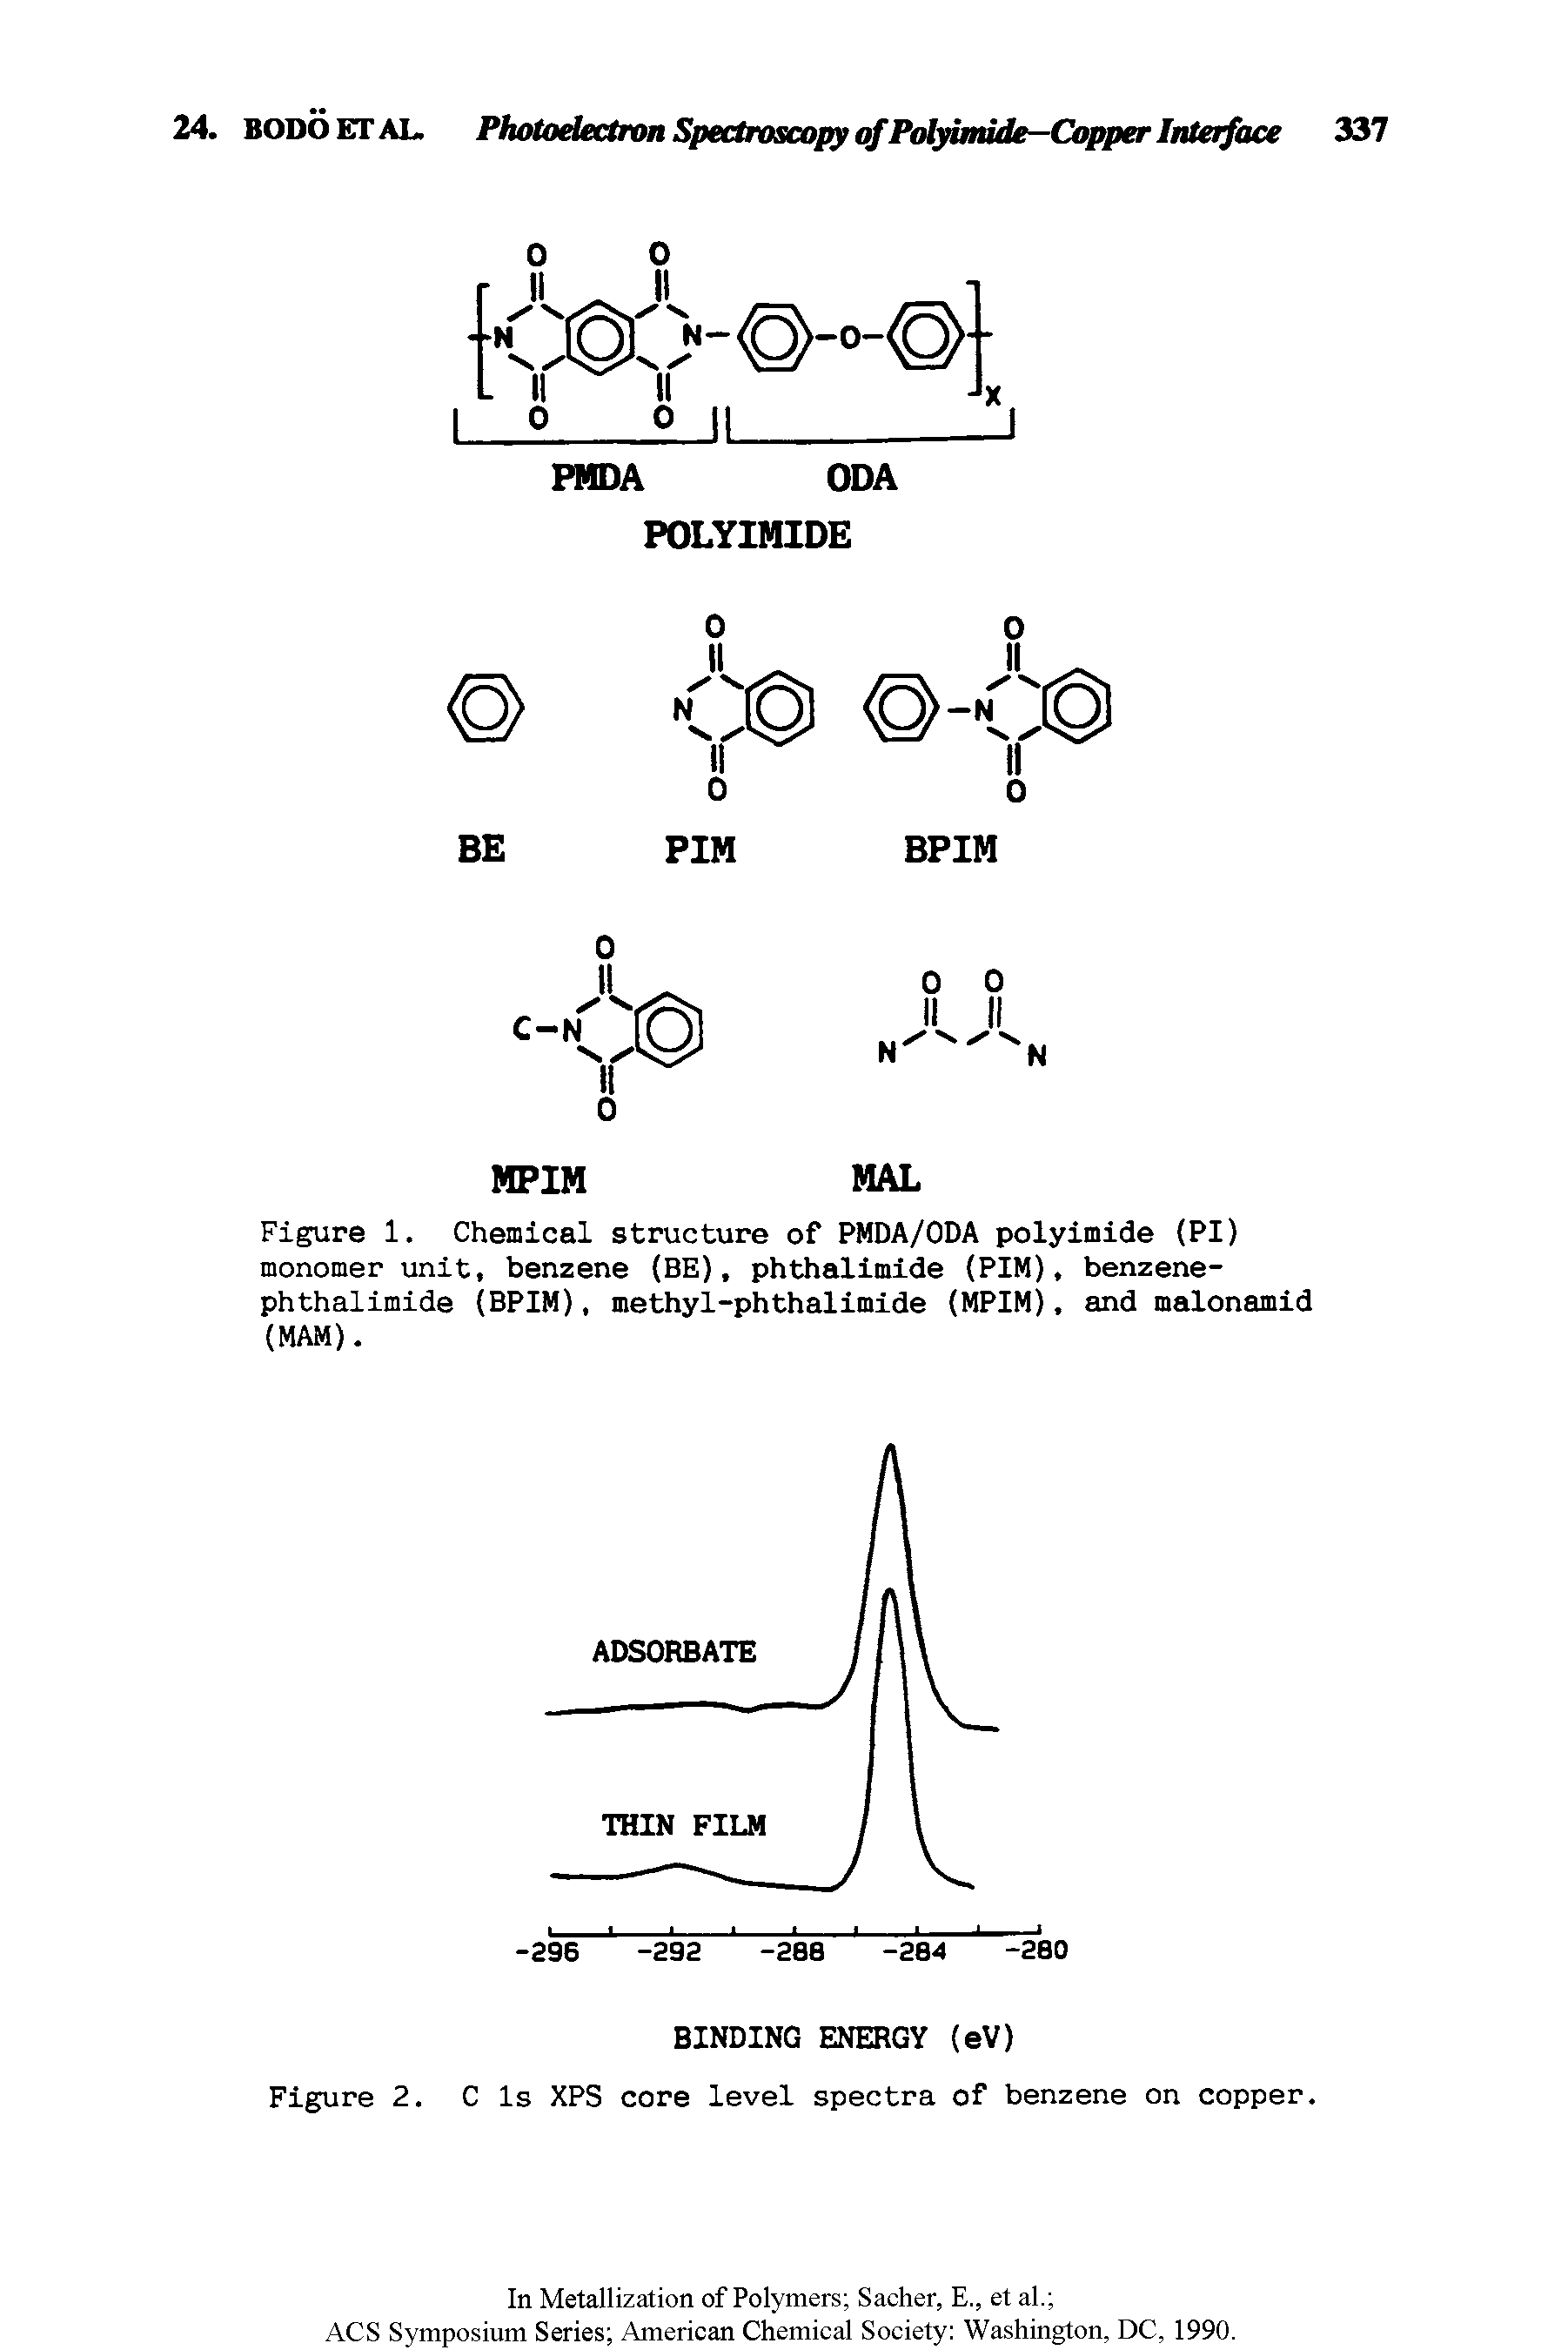 Figure 1. Chemical structure of PMDA/ODA polyimide (PI) monomer unit, benzene (BE), phthalimide (PIM), benzene-phthalimide (BPIM), methyl-phthalimide (MPIM), and malonamid (MAM).